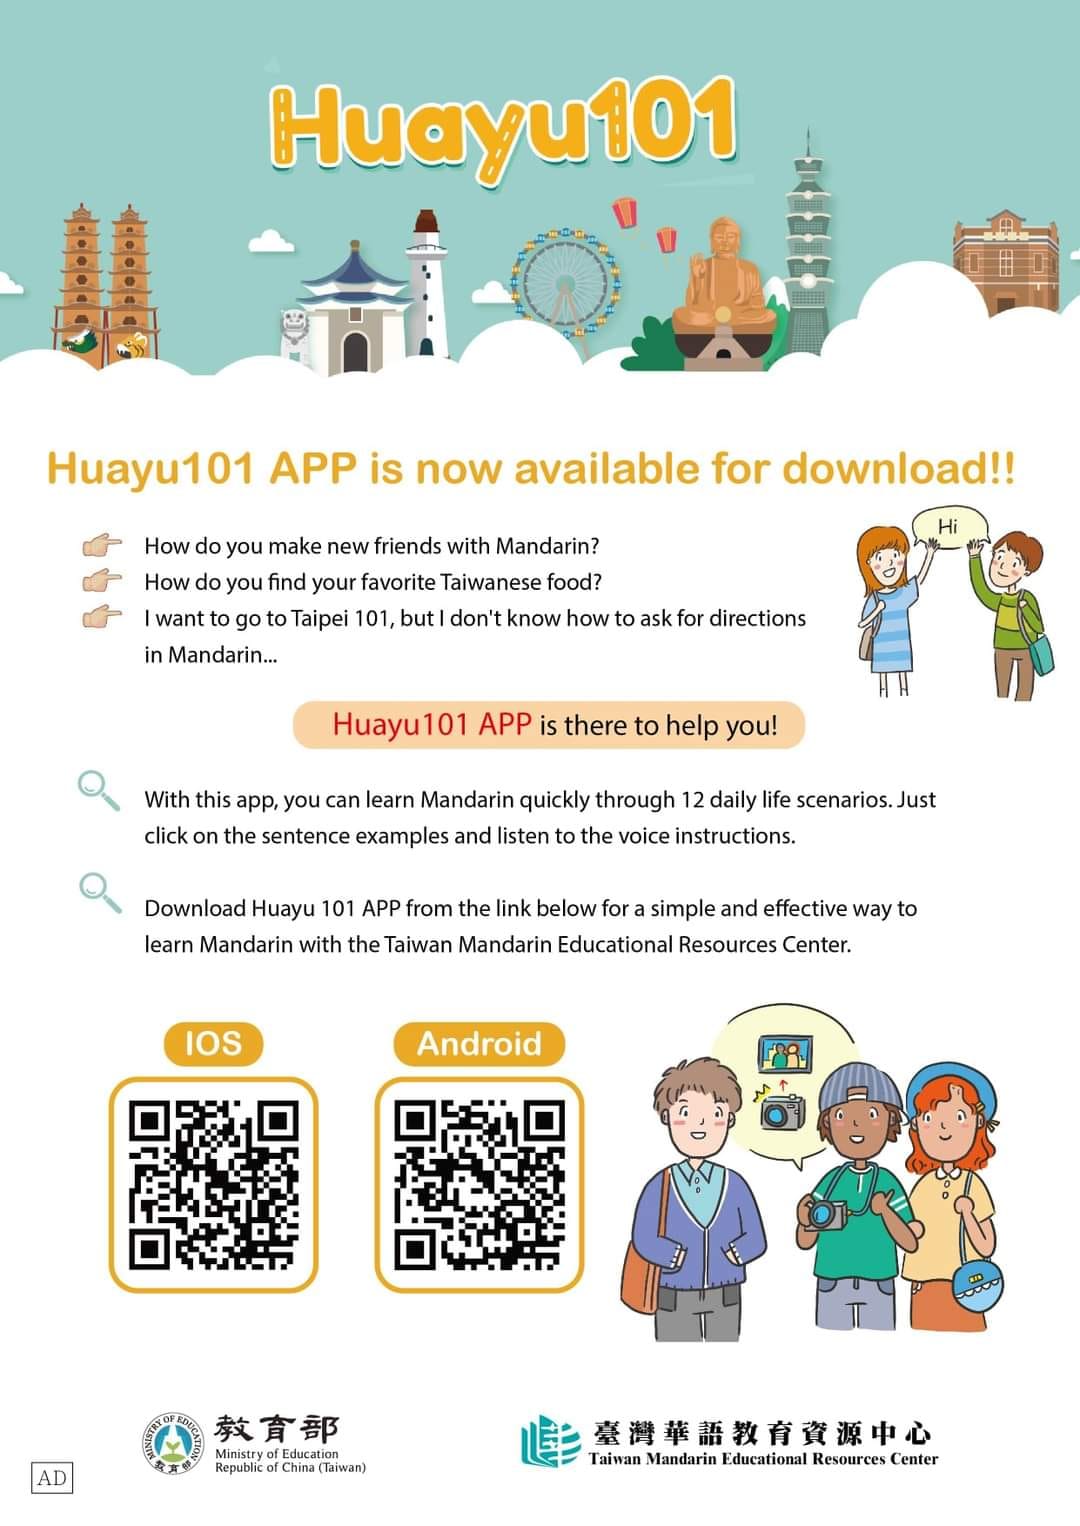 【3.5.2565】แอปพลิเคชันเรียนภาษาจีน【Huayu101APP】 ดาวน์โหลดได้ฟรีทั้ง iOS และ Android